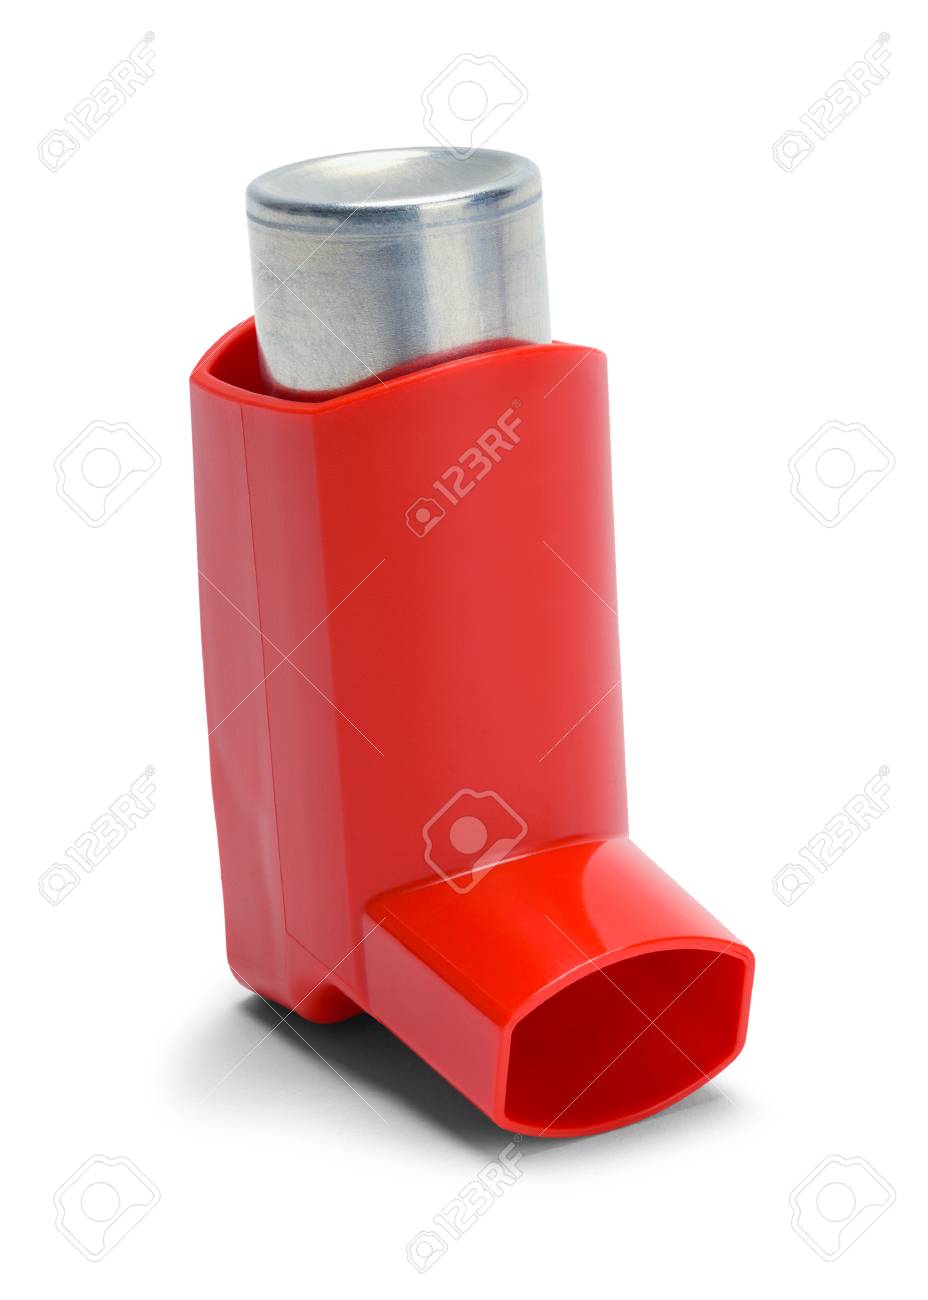 inhaler image